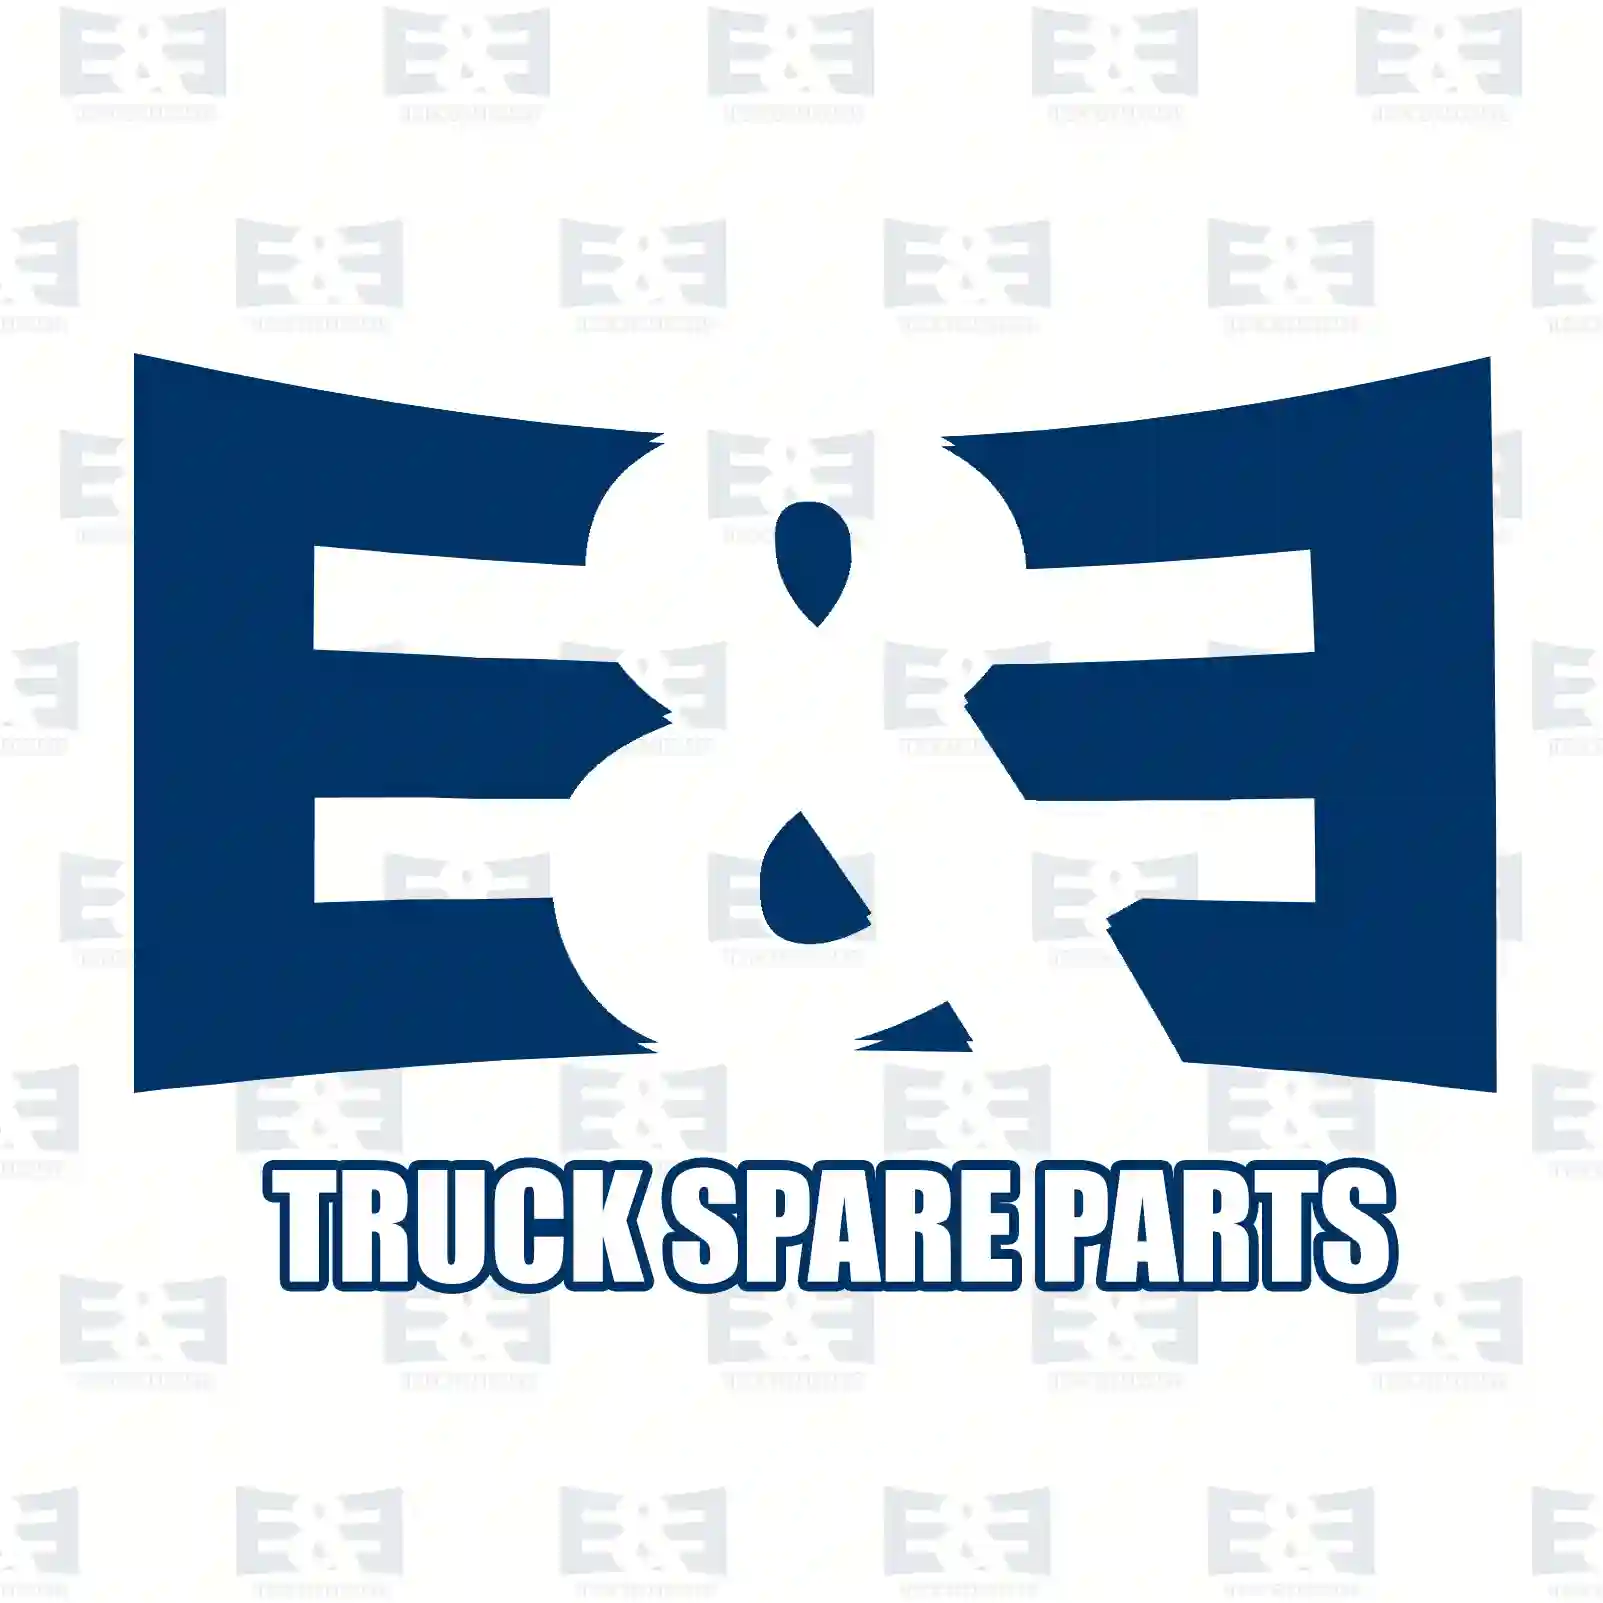 Battery main switch, 2E2299787, 20466310, 24427534, ZG20276-0008 ||  2E2299787 E&E Truck Spare Parts | Truck Spare Parts, Auotomotive Spare Parts Battery main switch, 2E2299787, 20466310, 24427534, ZG20276-0008 ||  2E2299787 E&E Truck Spare Parts | Truck Spare Parts, Auotomotive Spare Parts